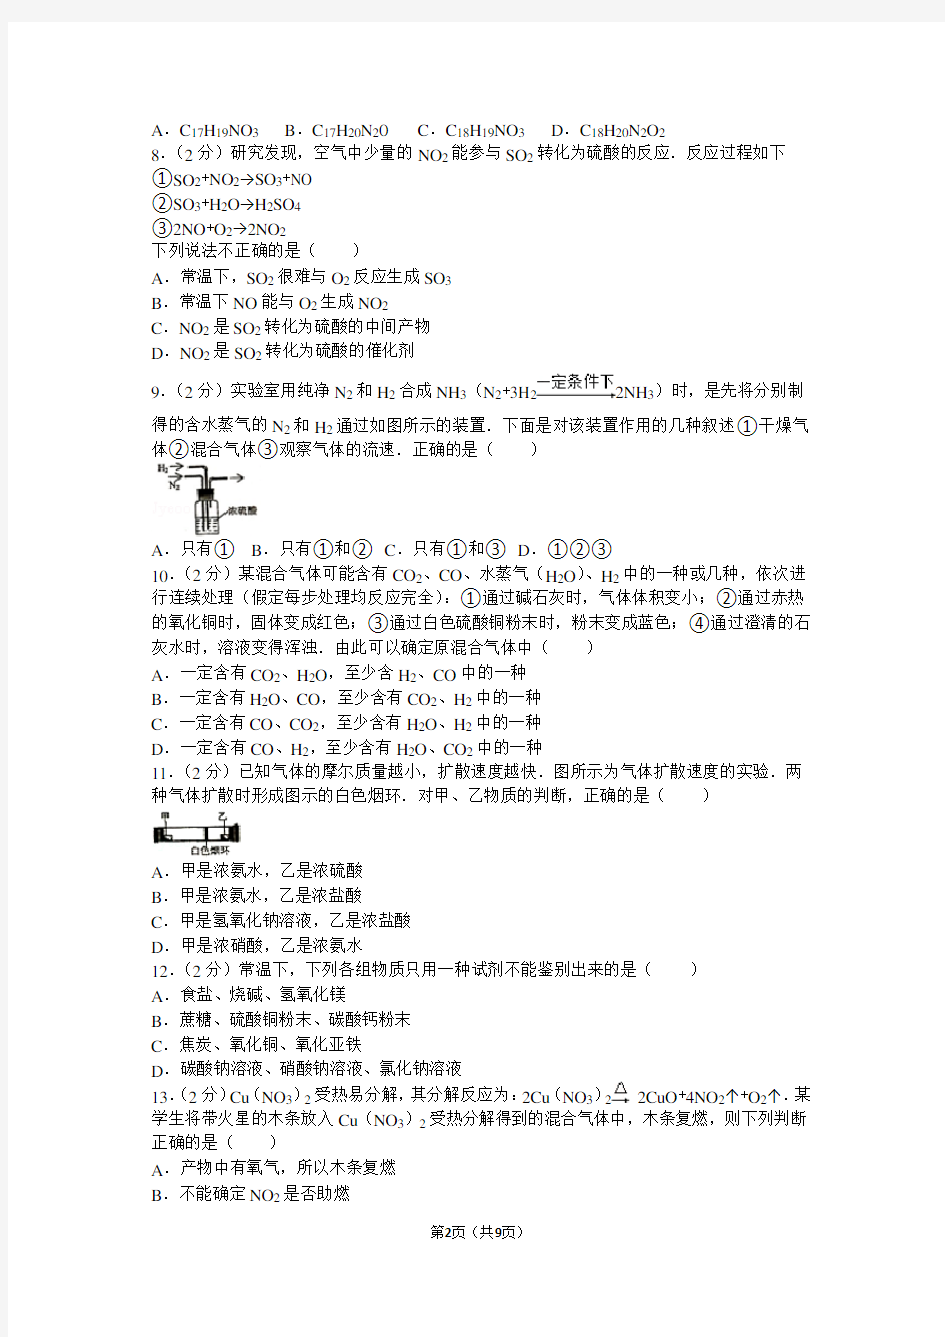 2013年第二十三届“天原杯”全国初中学生化学素质和实验能力竞赛(上海赛区)初赛试卷